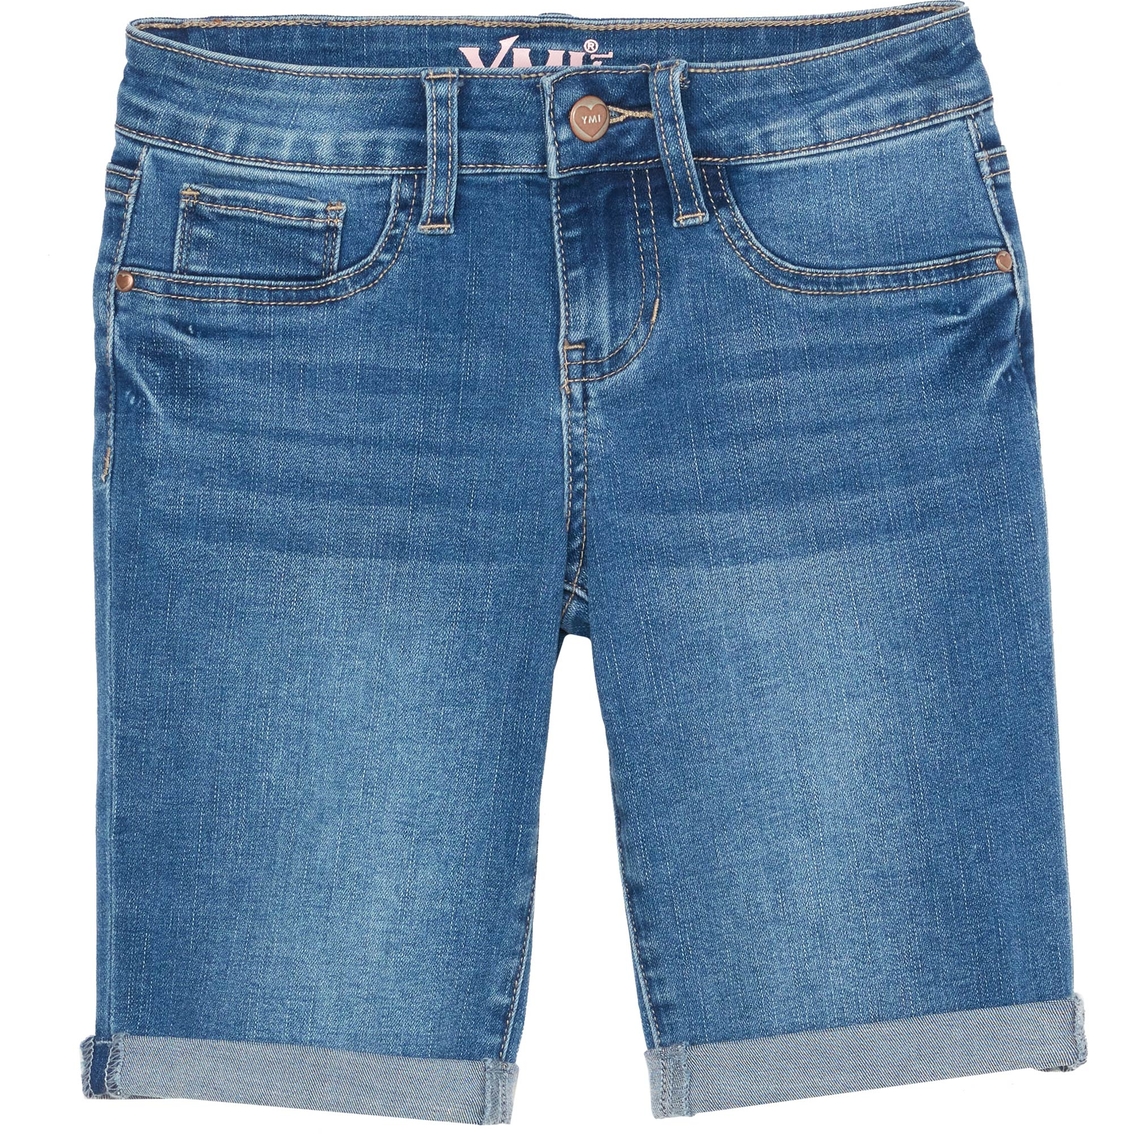 Ymi Jeans Girls Cuffed Denim Bermuda Shorts | Girls 7-16 | Clothing ...